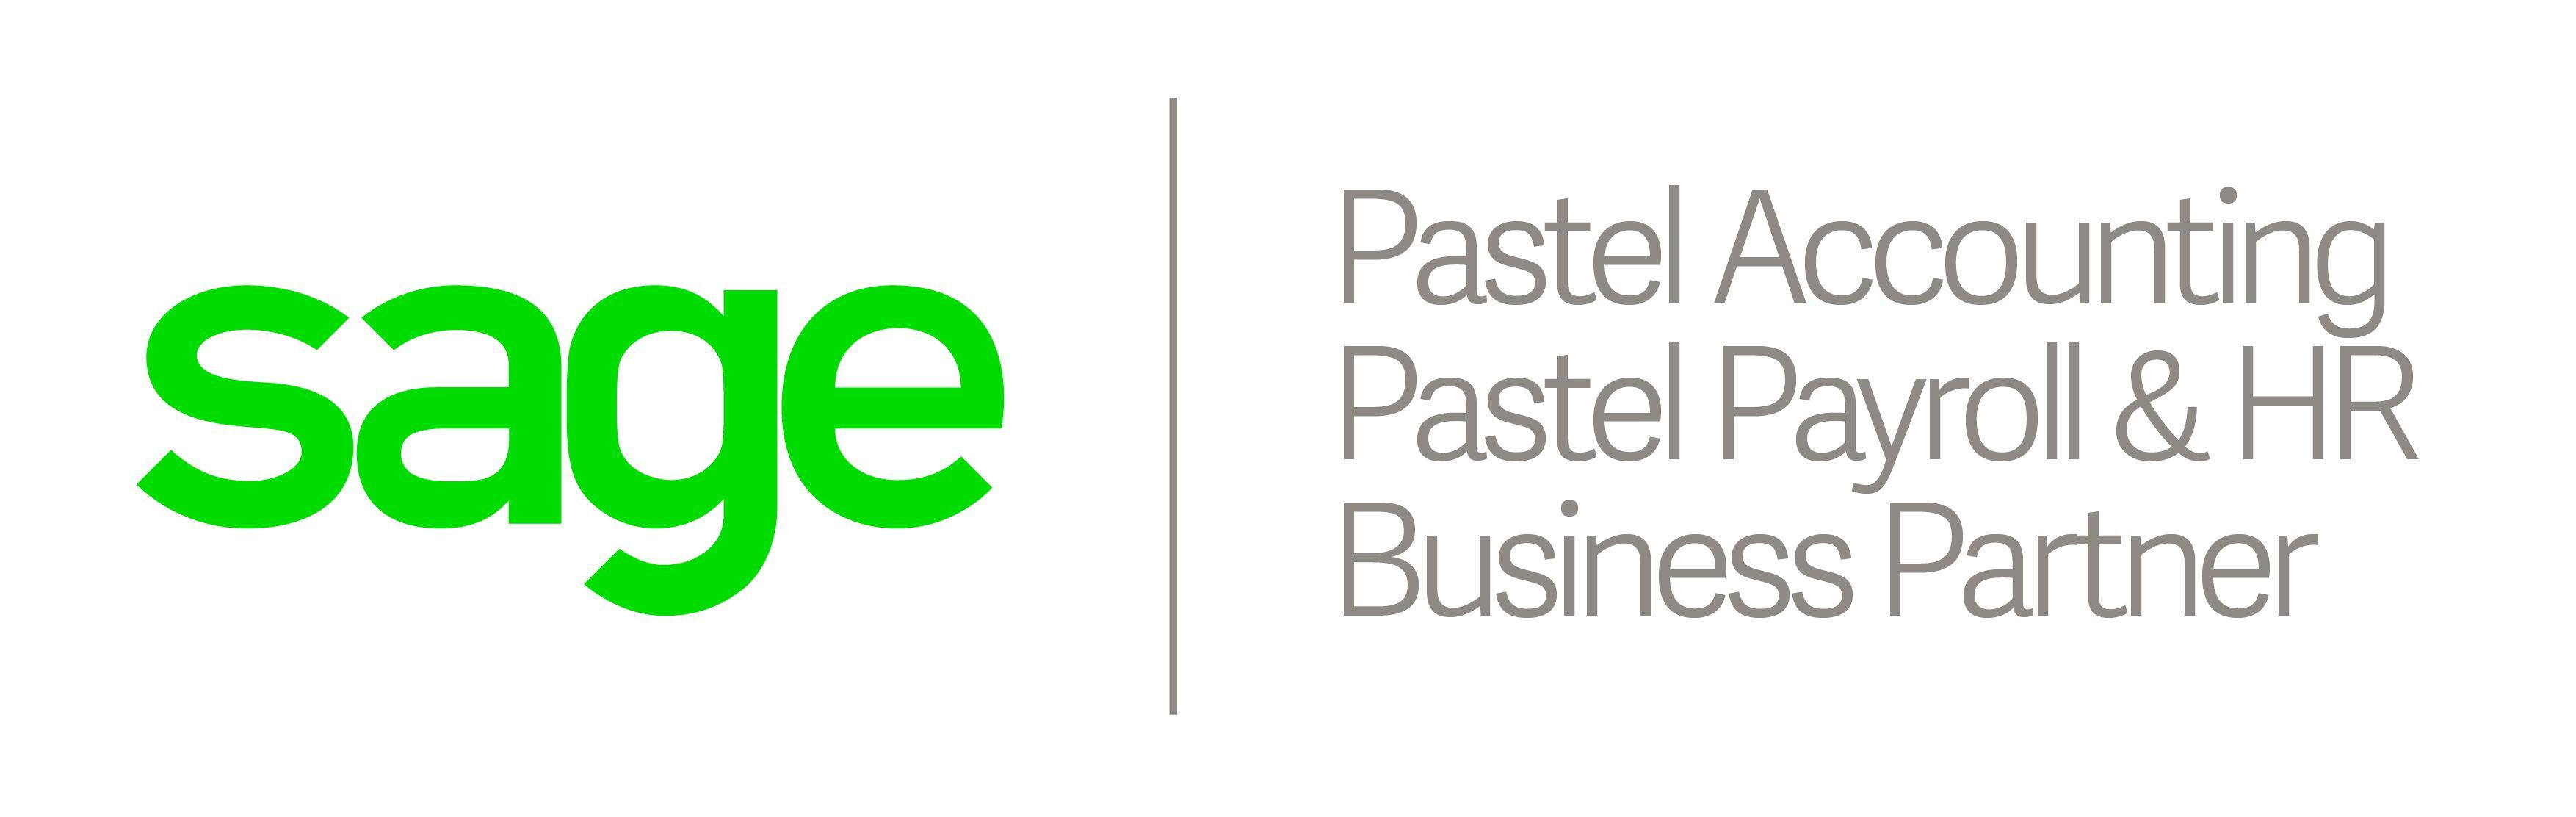 Pastel Accounting Logo - Sage Pastel